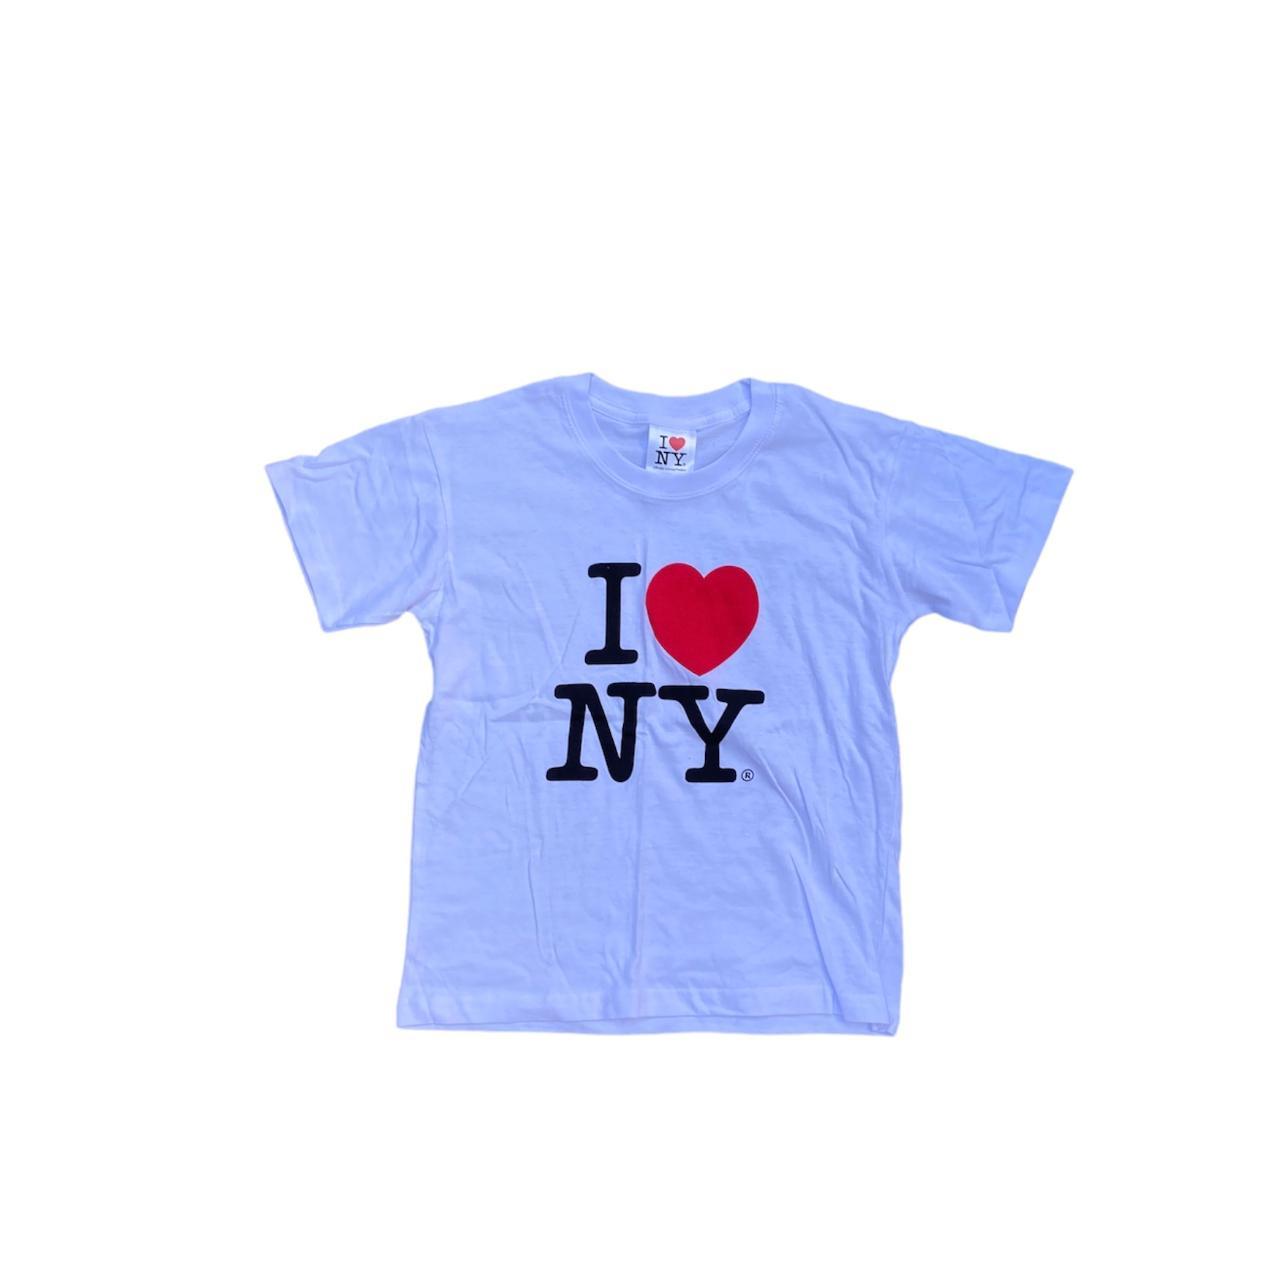 I Love NY Baby T-Shirt - White